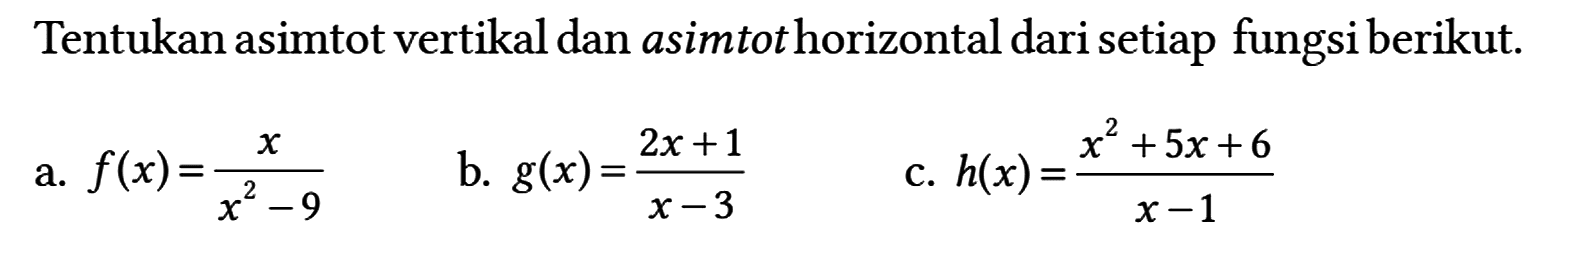 Tentukan asimtot vertikal dan asimtot horizontal dari setiap fungsi berikut.
a.  f(x) = x/(x^2 - 9) 
b.  g(x) = (2x + 1)/(x - 3) 
c.  h(x) = (x^2 + 5x + 6)/(x - 1) 